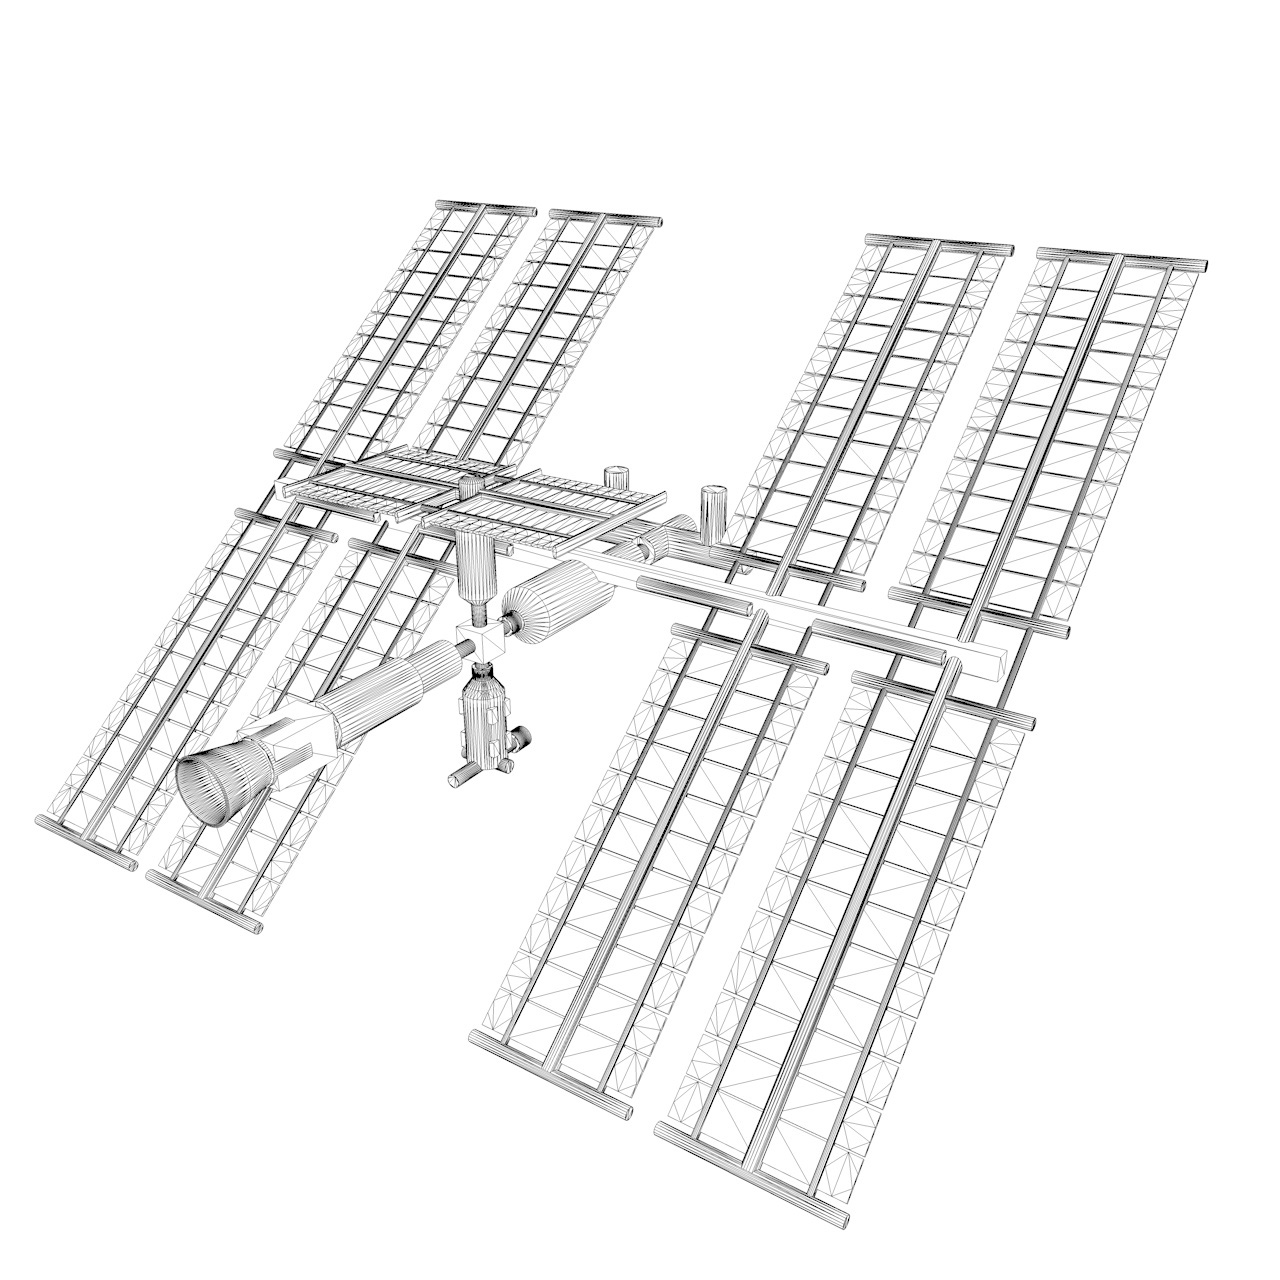 3д модел свемирске станице